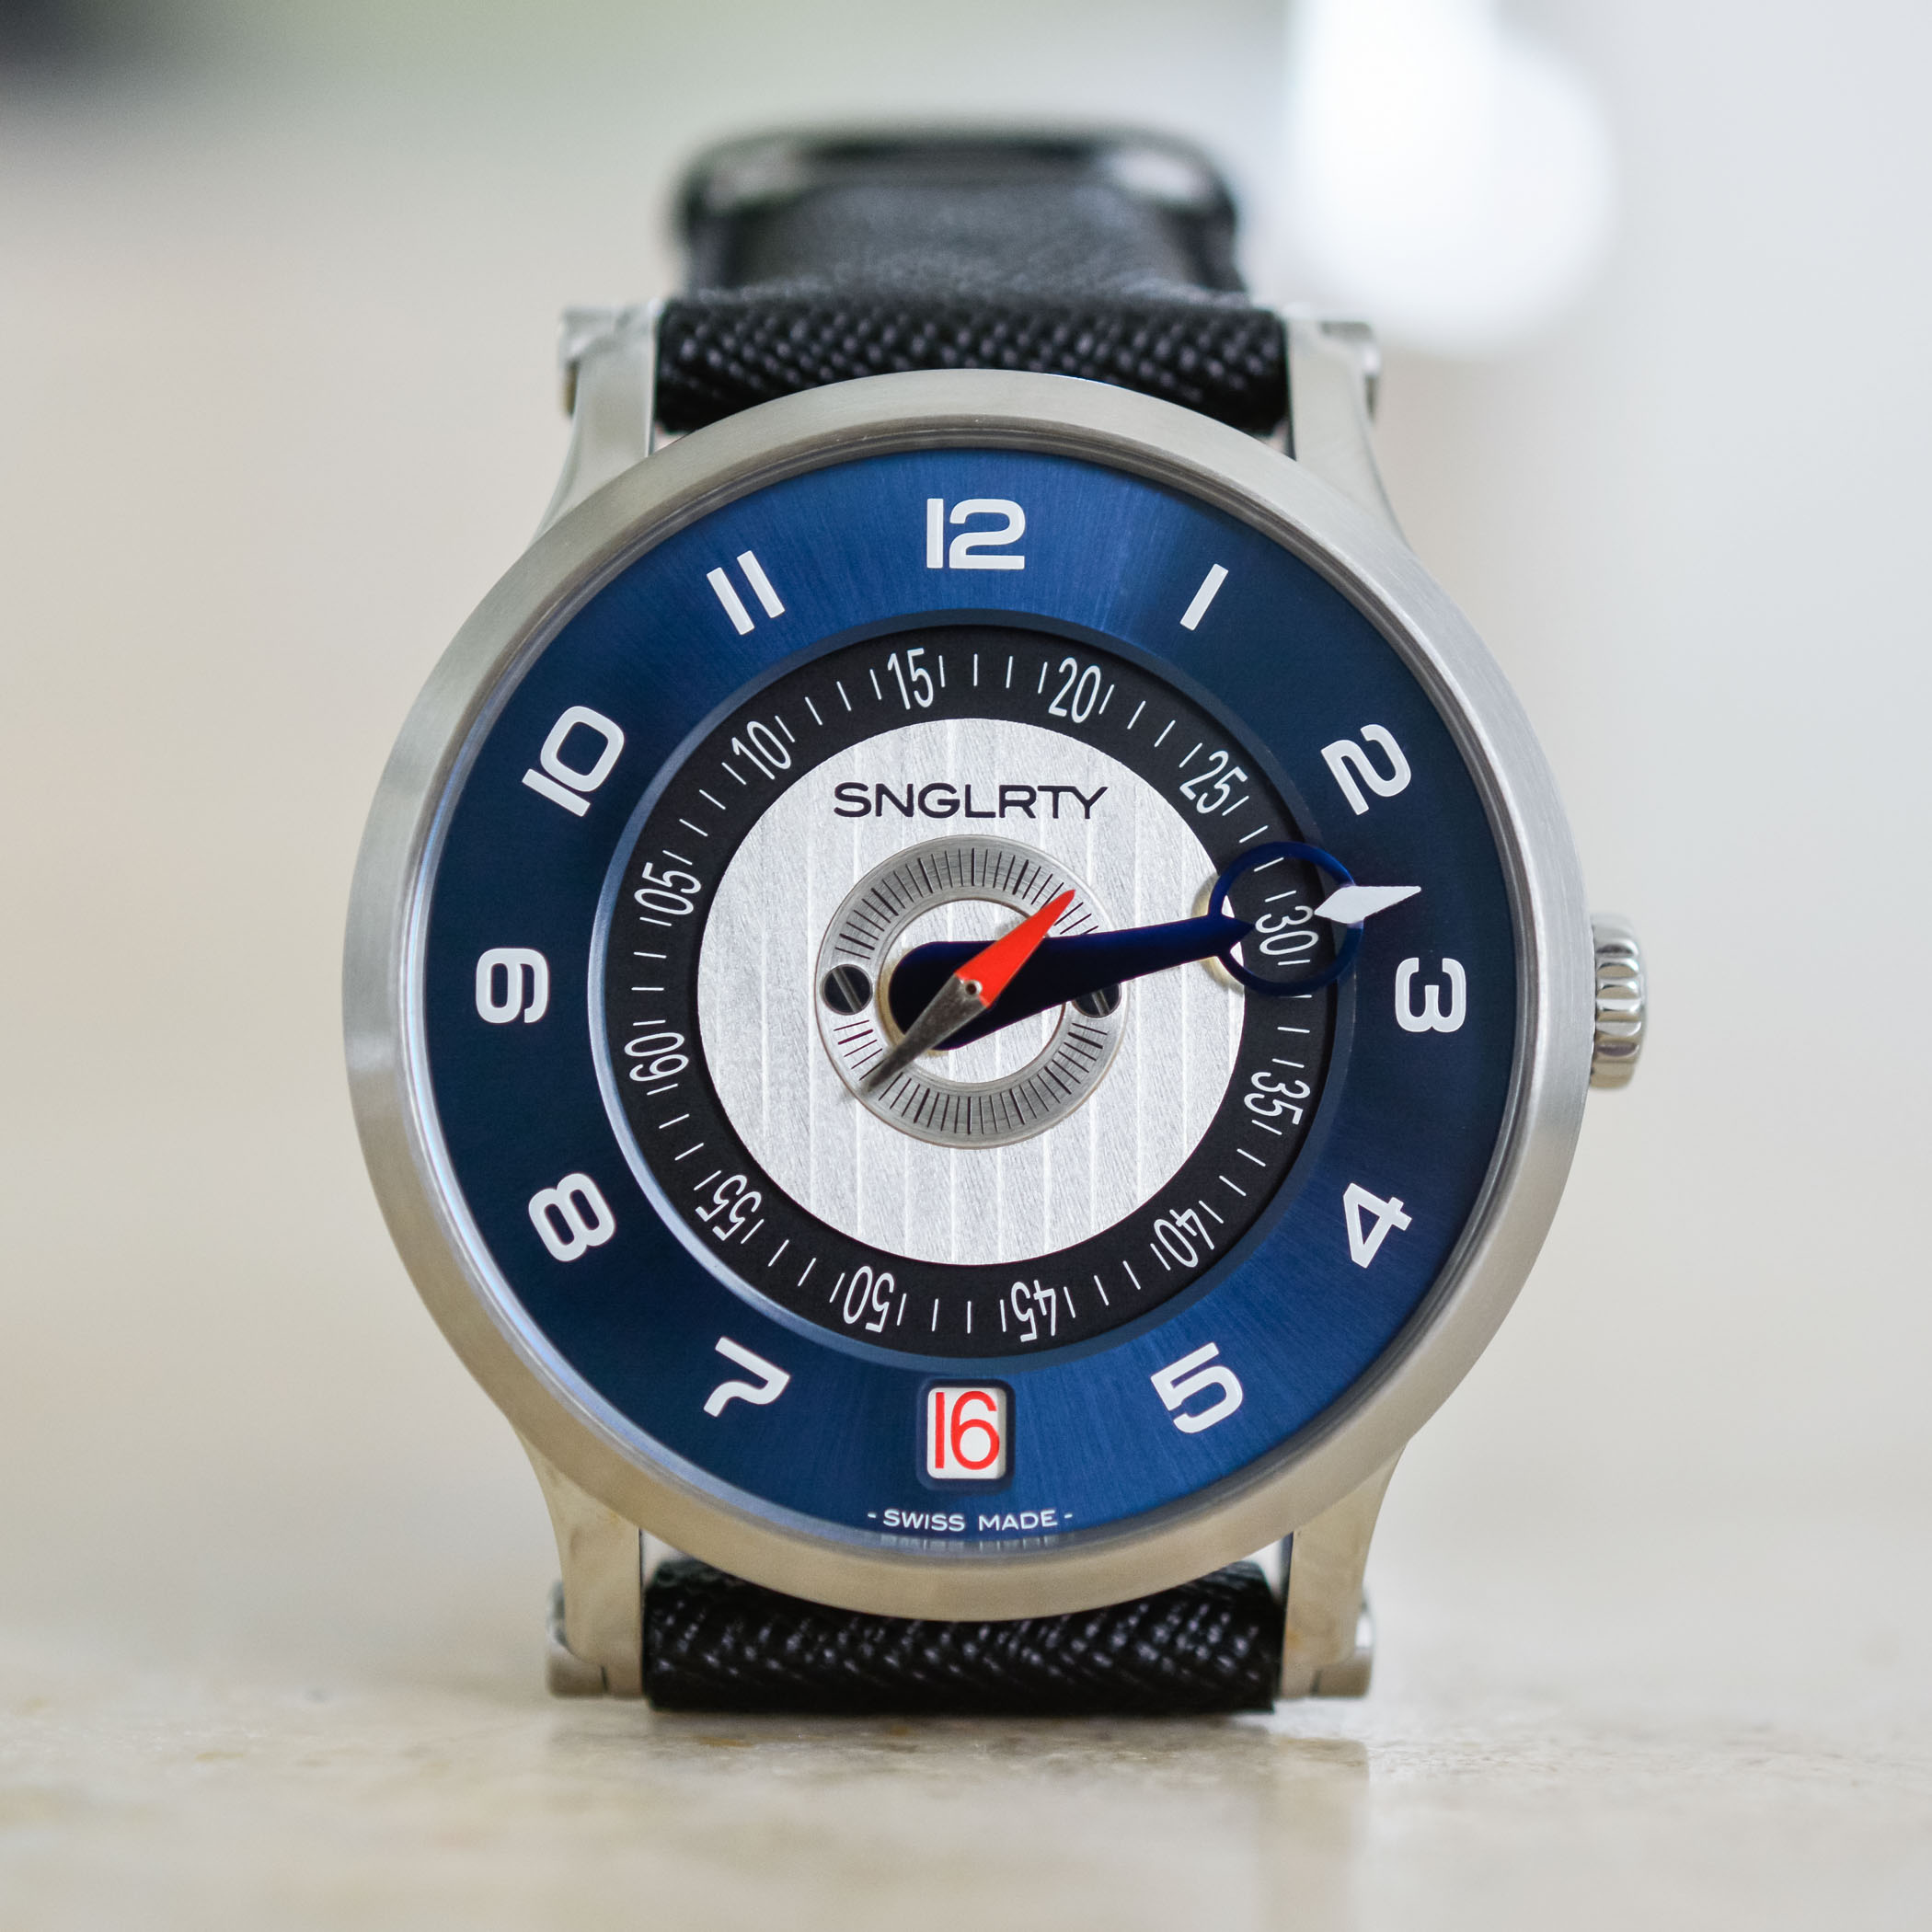 SNGLRTY Blue Steel Запатентованные часы с дисплеем OHI-4 независимое часовое производство